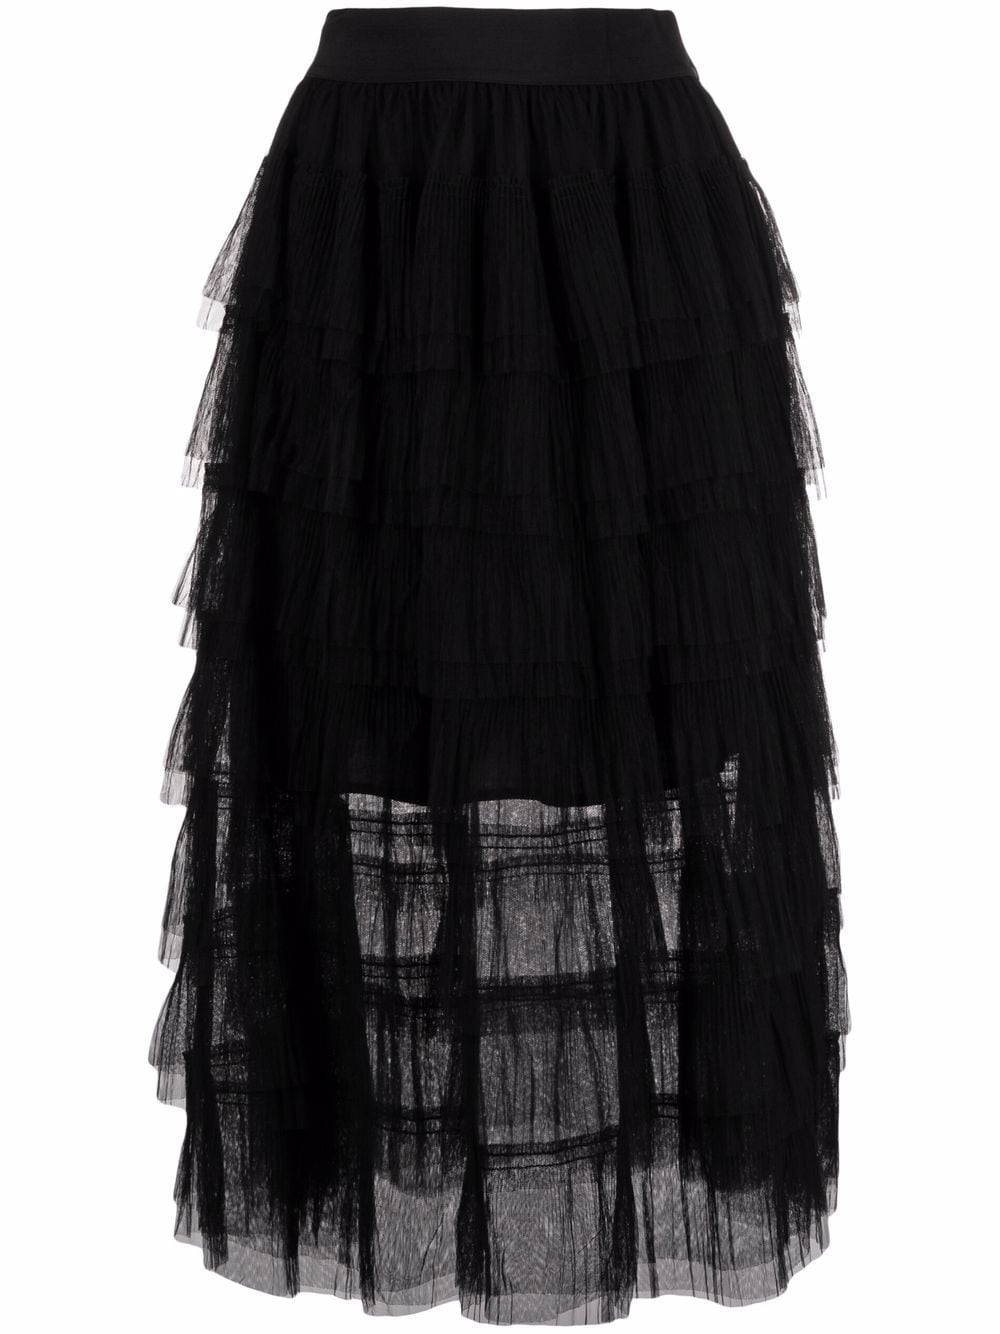 Thayri Black Tulle Midi Skirt